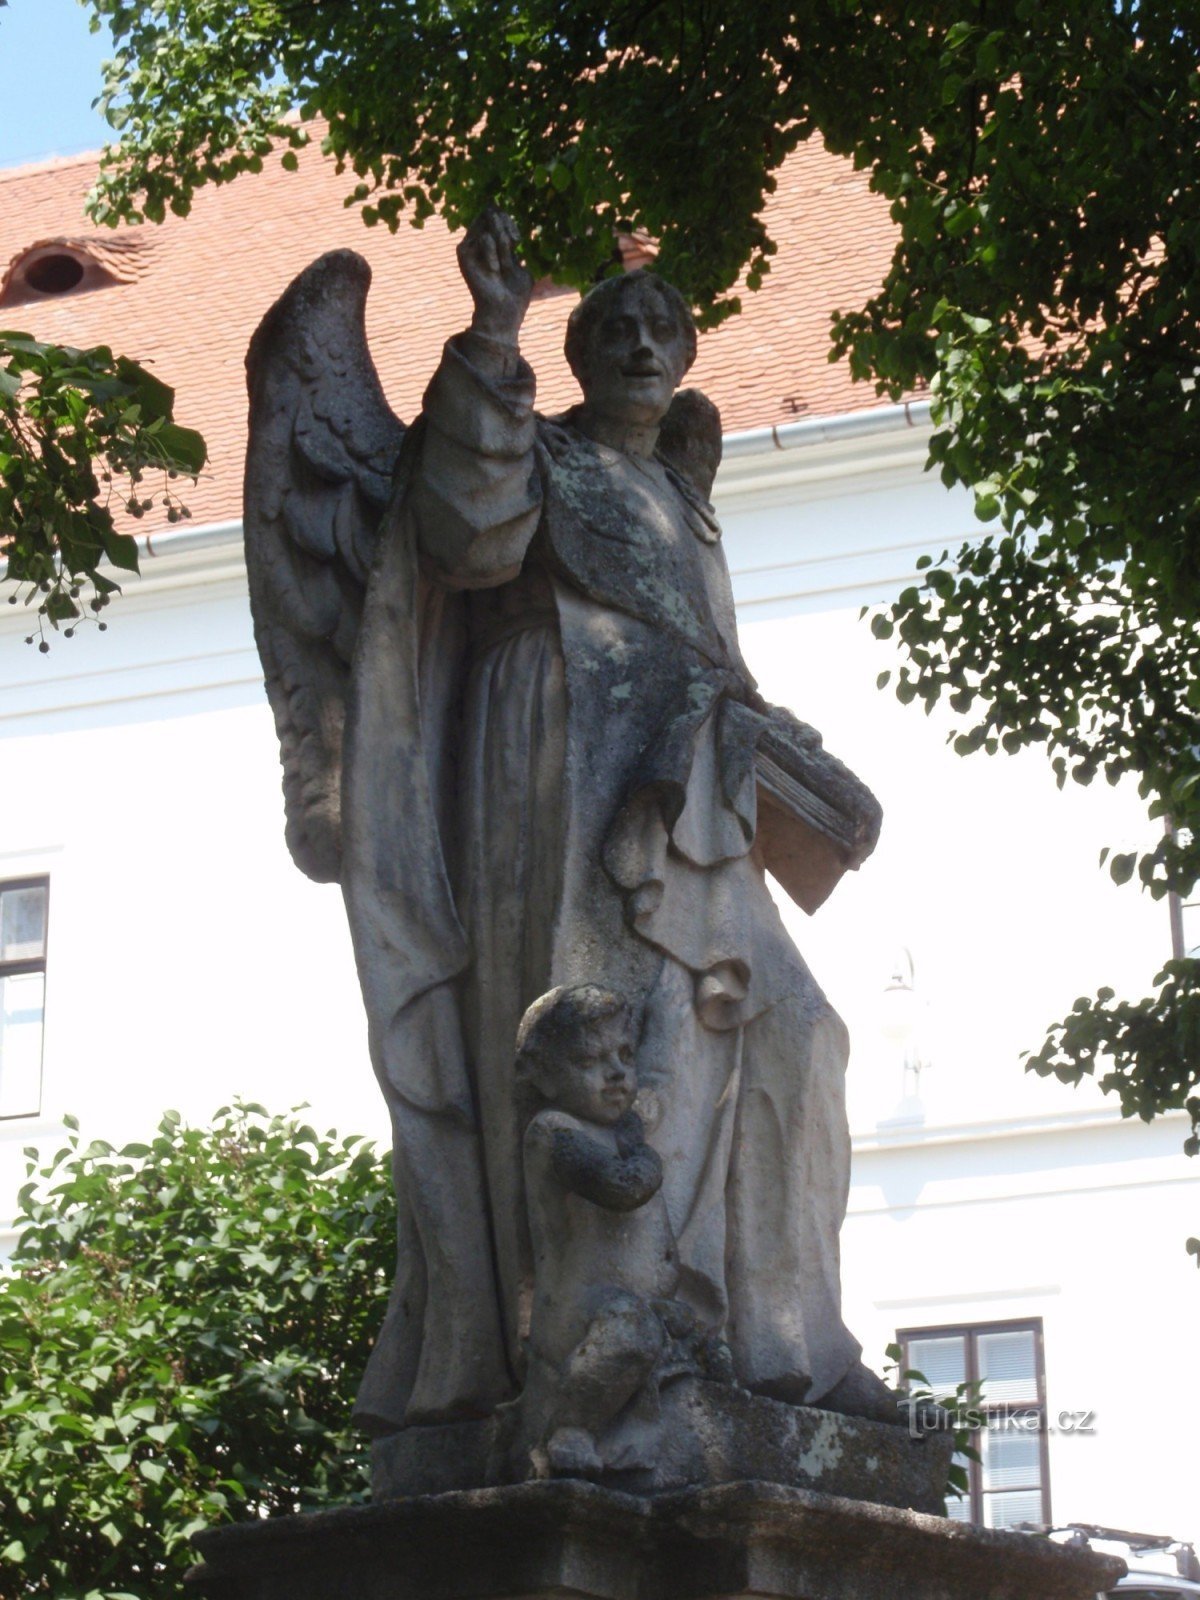 聖の像ブルノ近郊ロシツェのヴィンチェンツォ・フェレールスキー